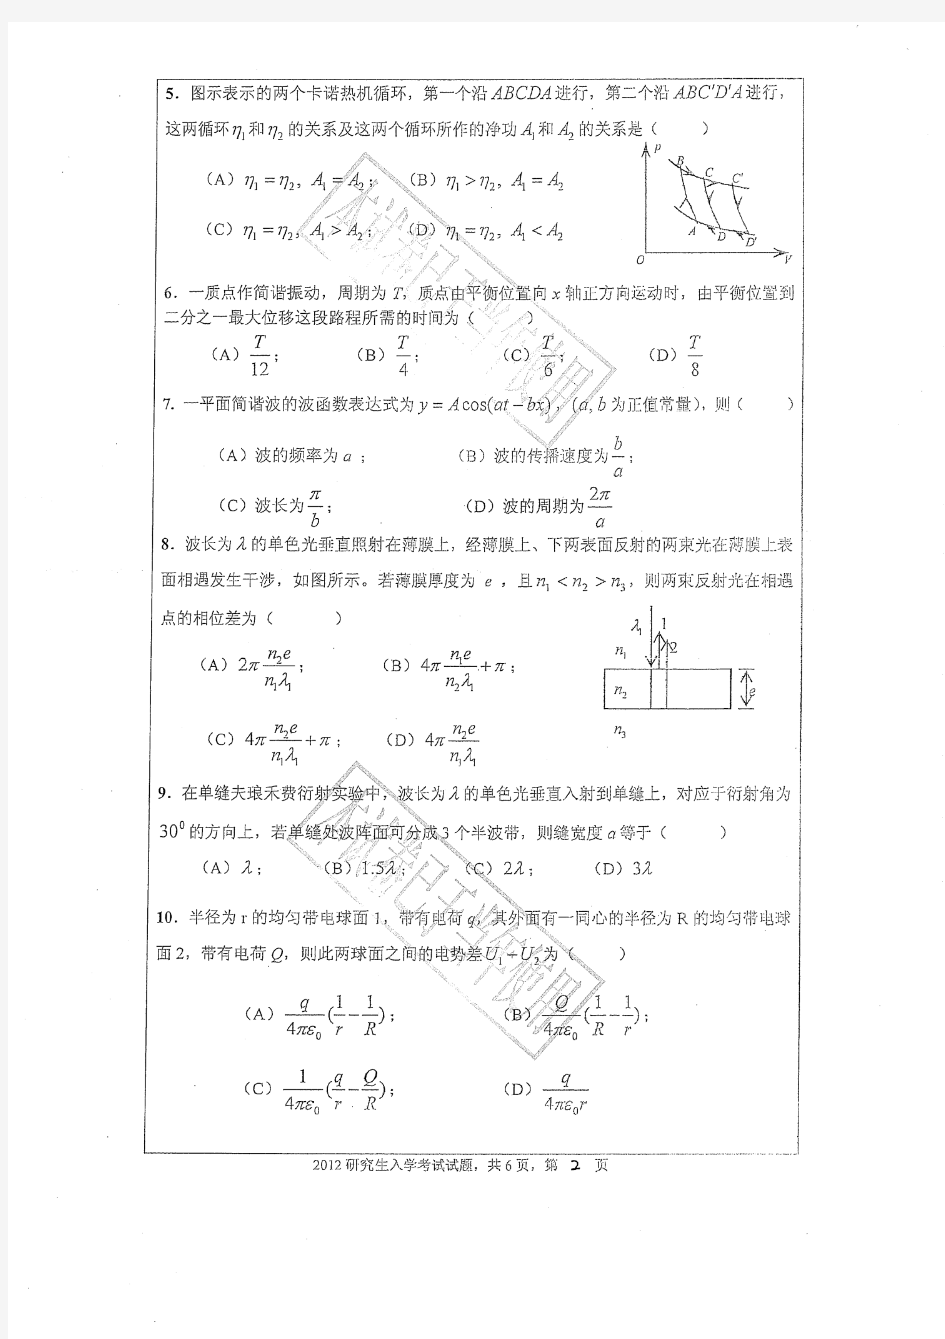 2012年广东工业大学847大学物理学考研试题